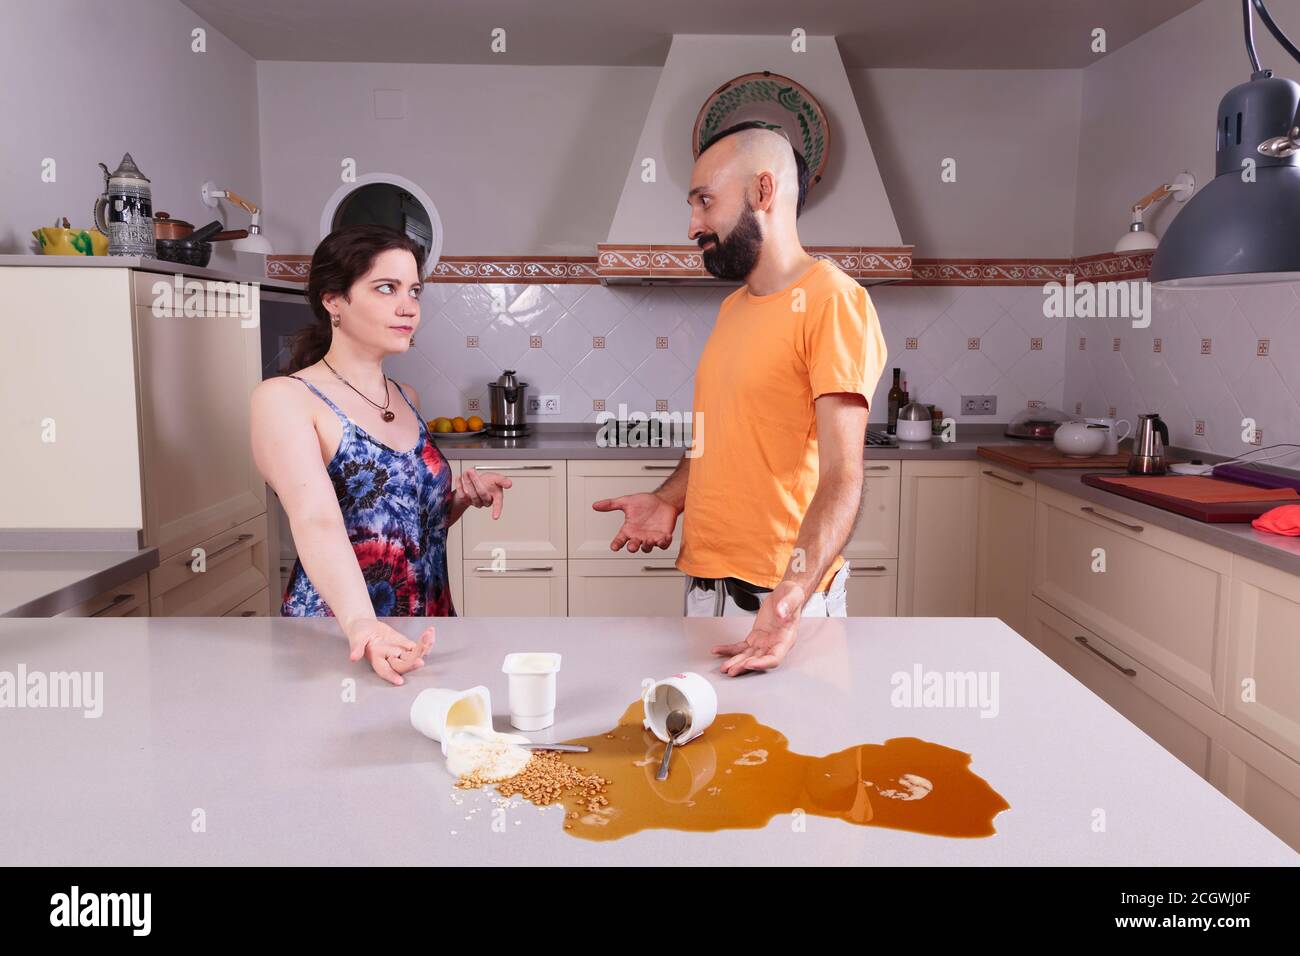 La coppia ispanica si è detta a proposito del bancone della cucina sporco Foto Stock